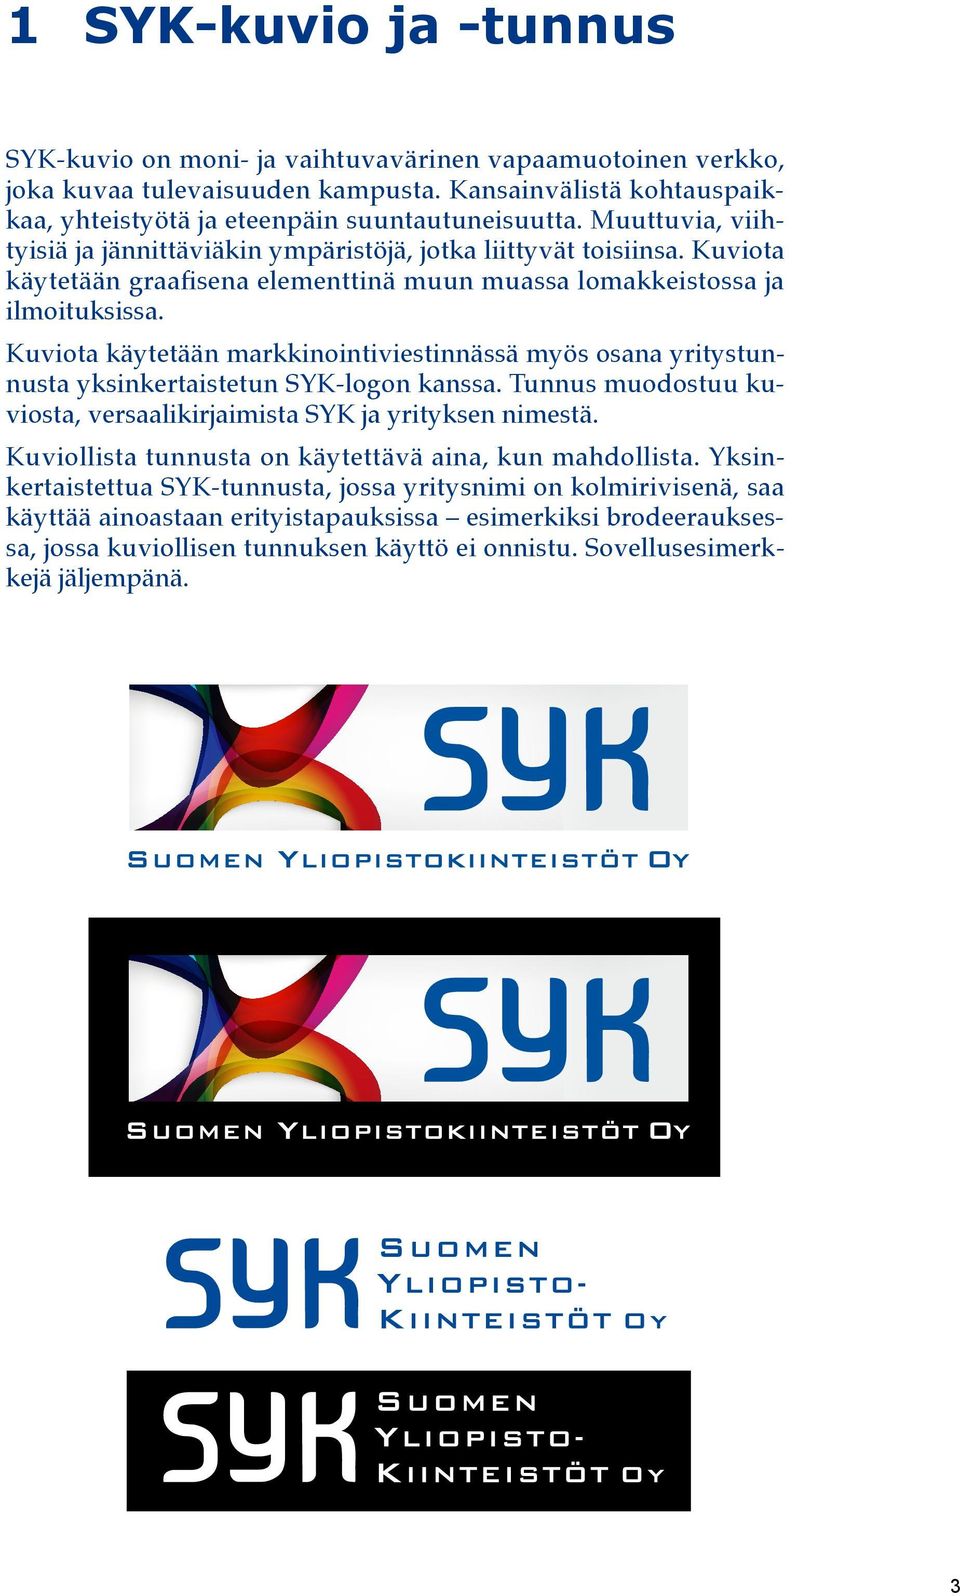 Kuviota käytetään markkinointiviestinnässä myös osana yritystunnusta yksinkertaistetun SYK-logon kanssa. Tunnus muodostuu kuviosta, versaalikirjaimista SYK ja yrityksen nimestä.